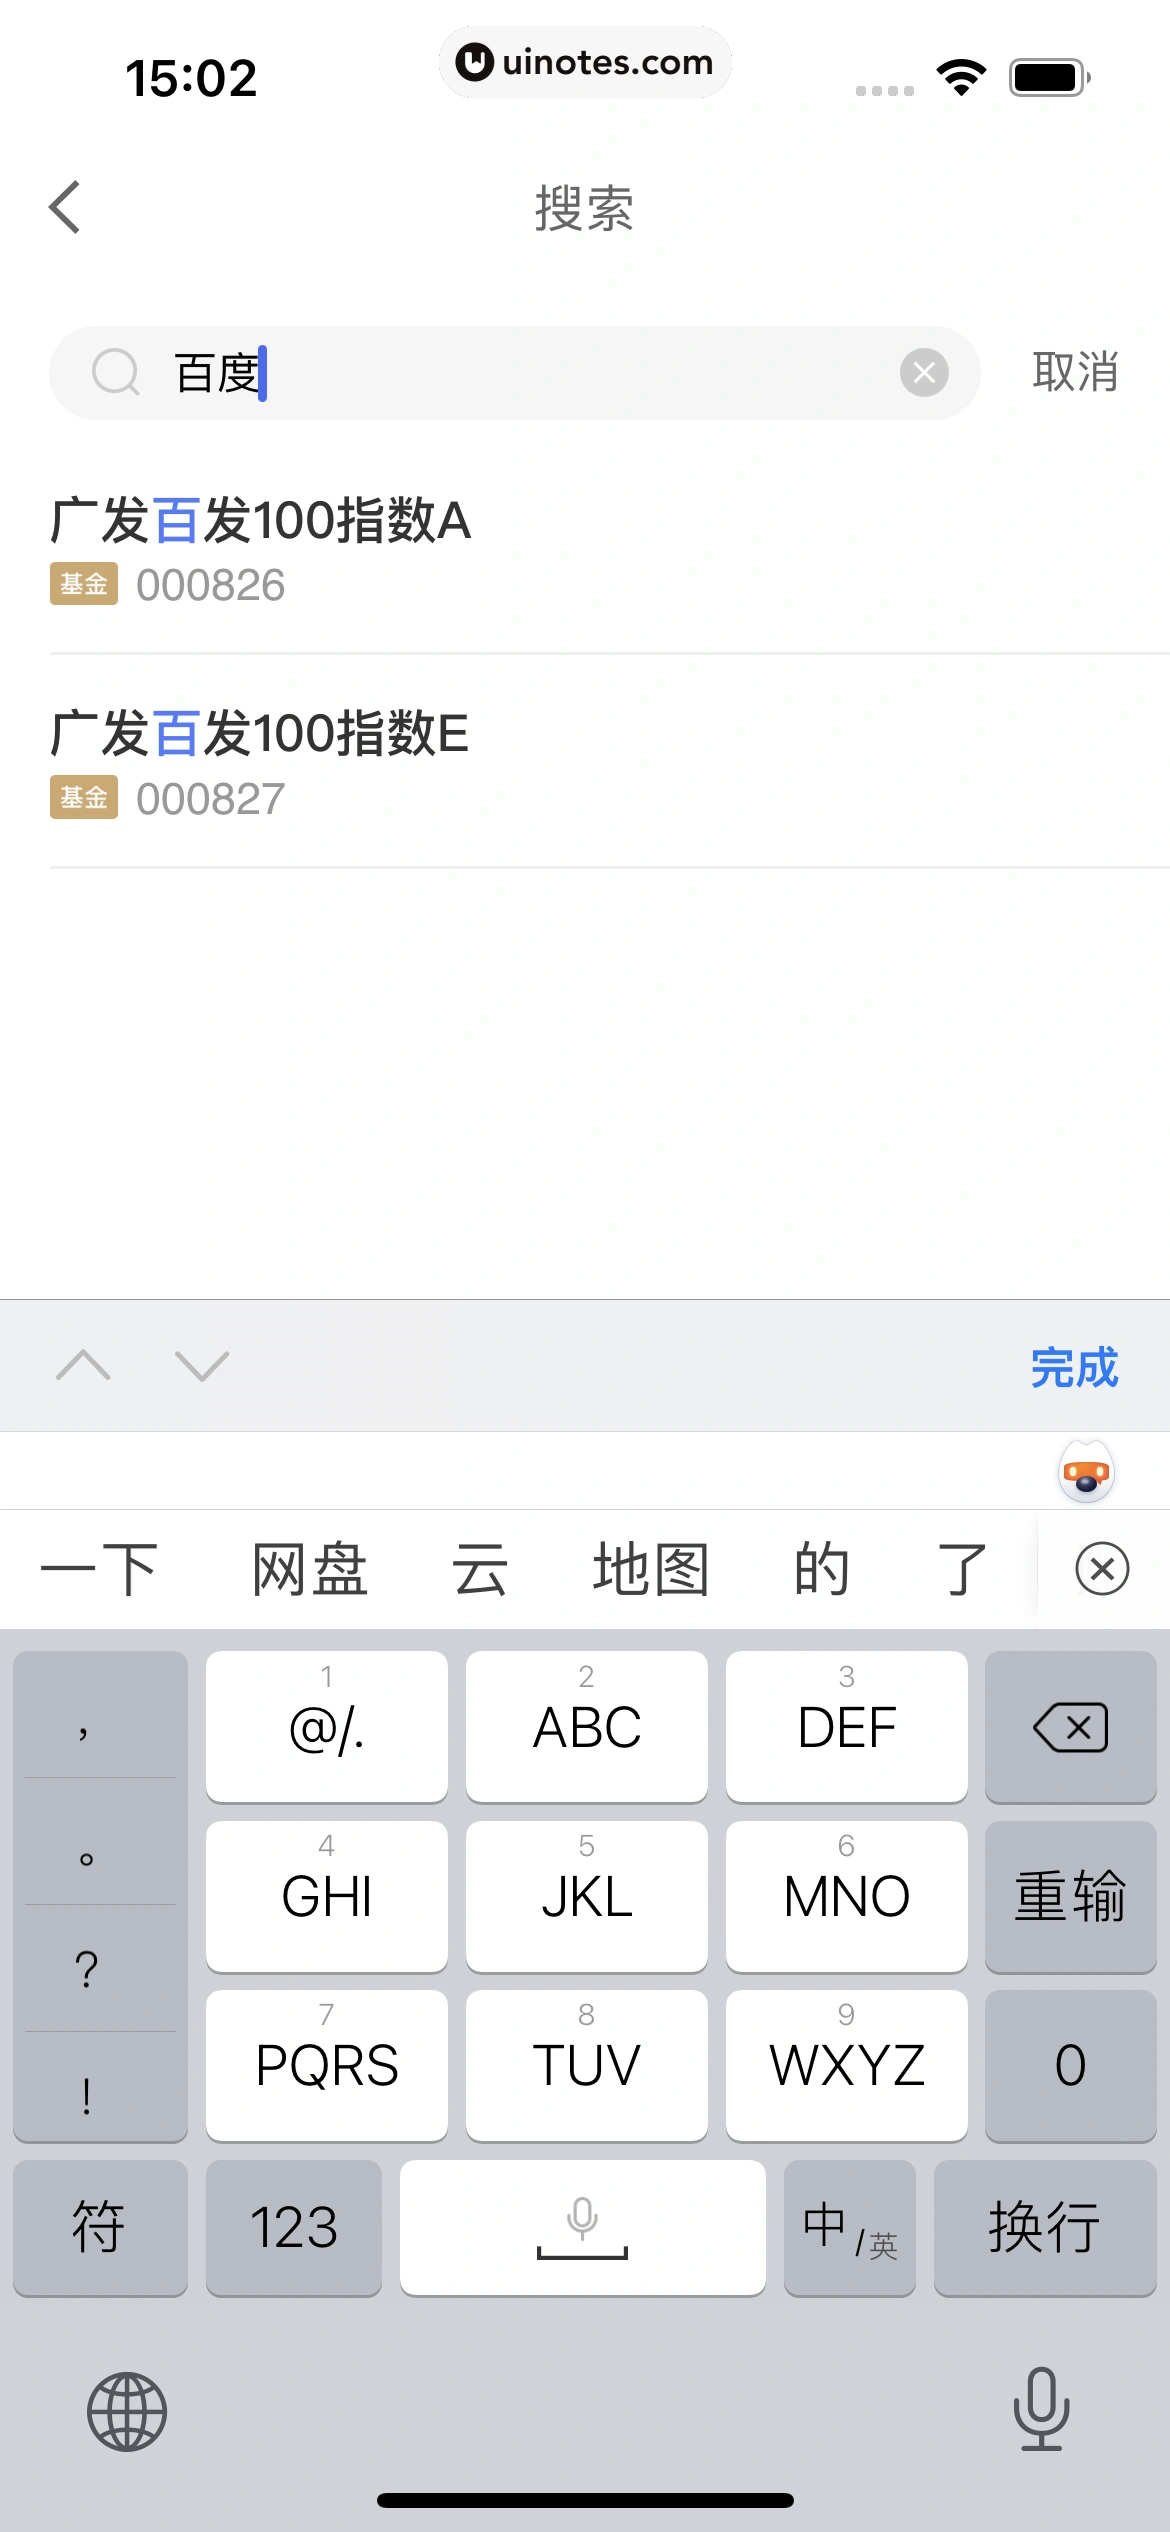 京东金融 App 截图 133 - UI Notes